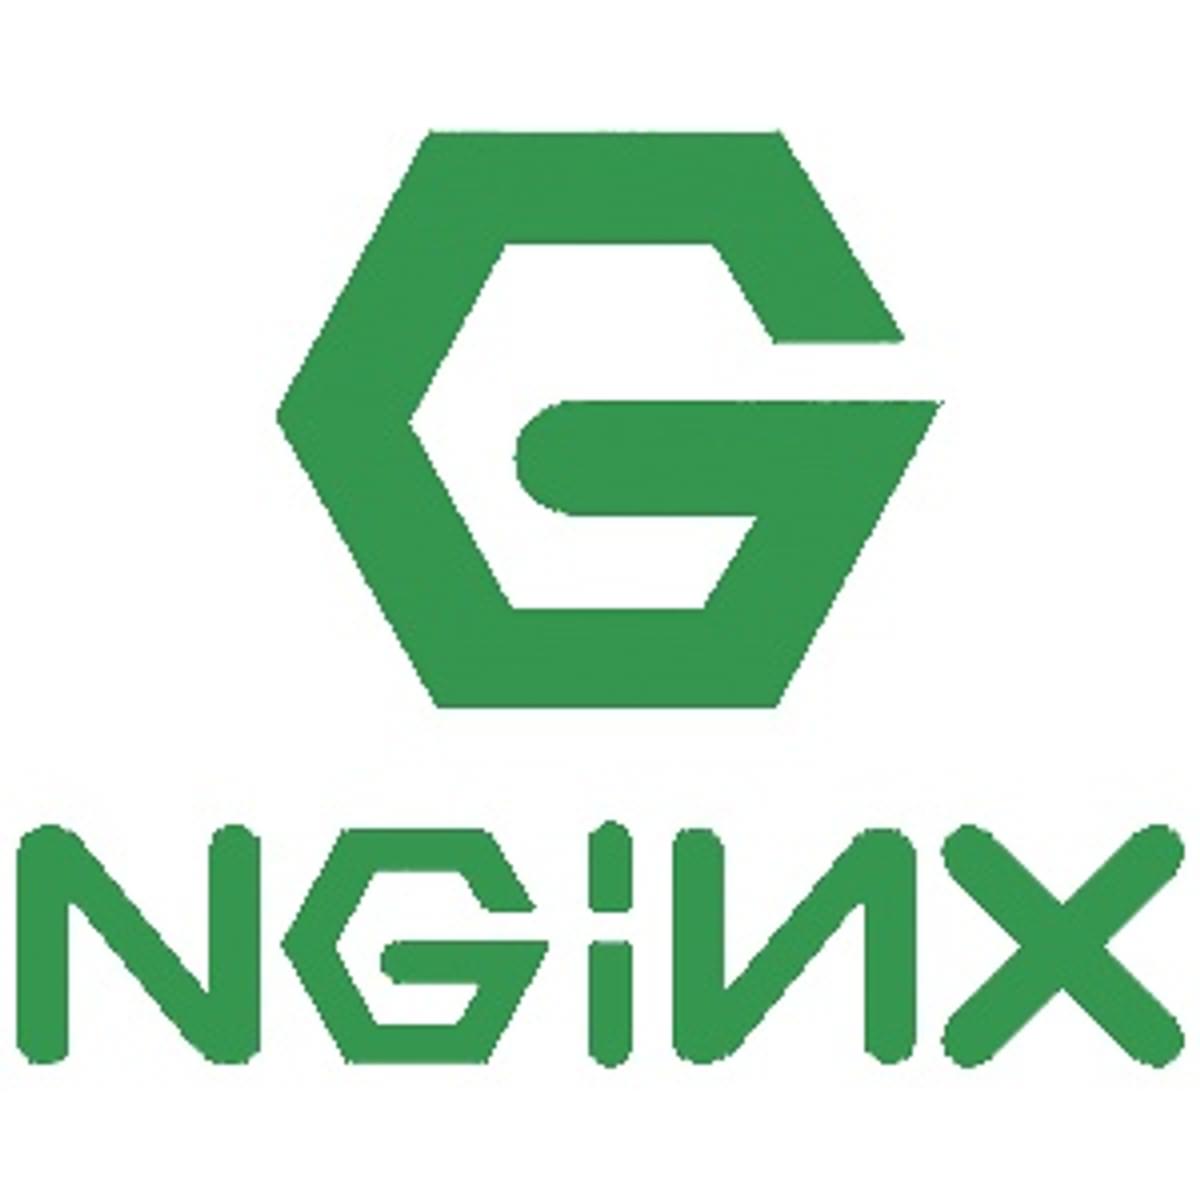 NGINX krijgt kapitaalinjectie van 43 miljoen dollar image